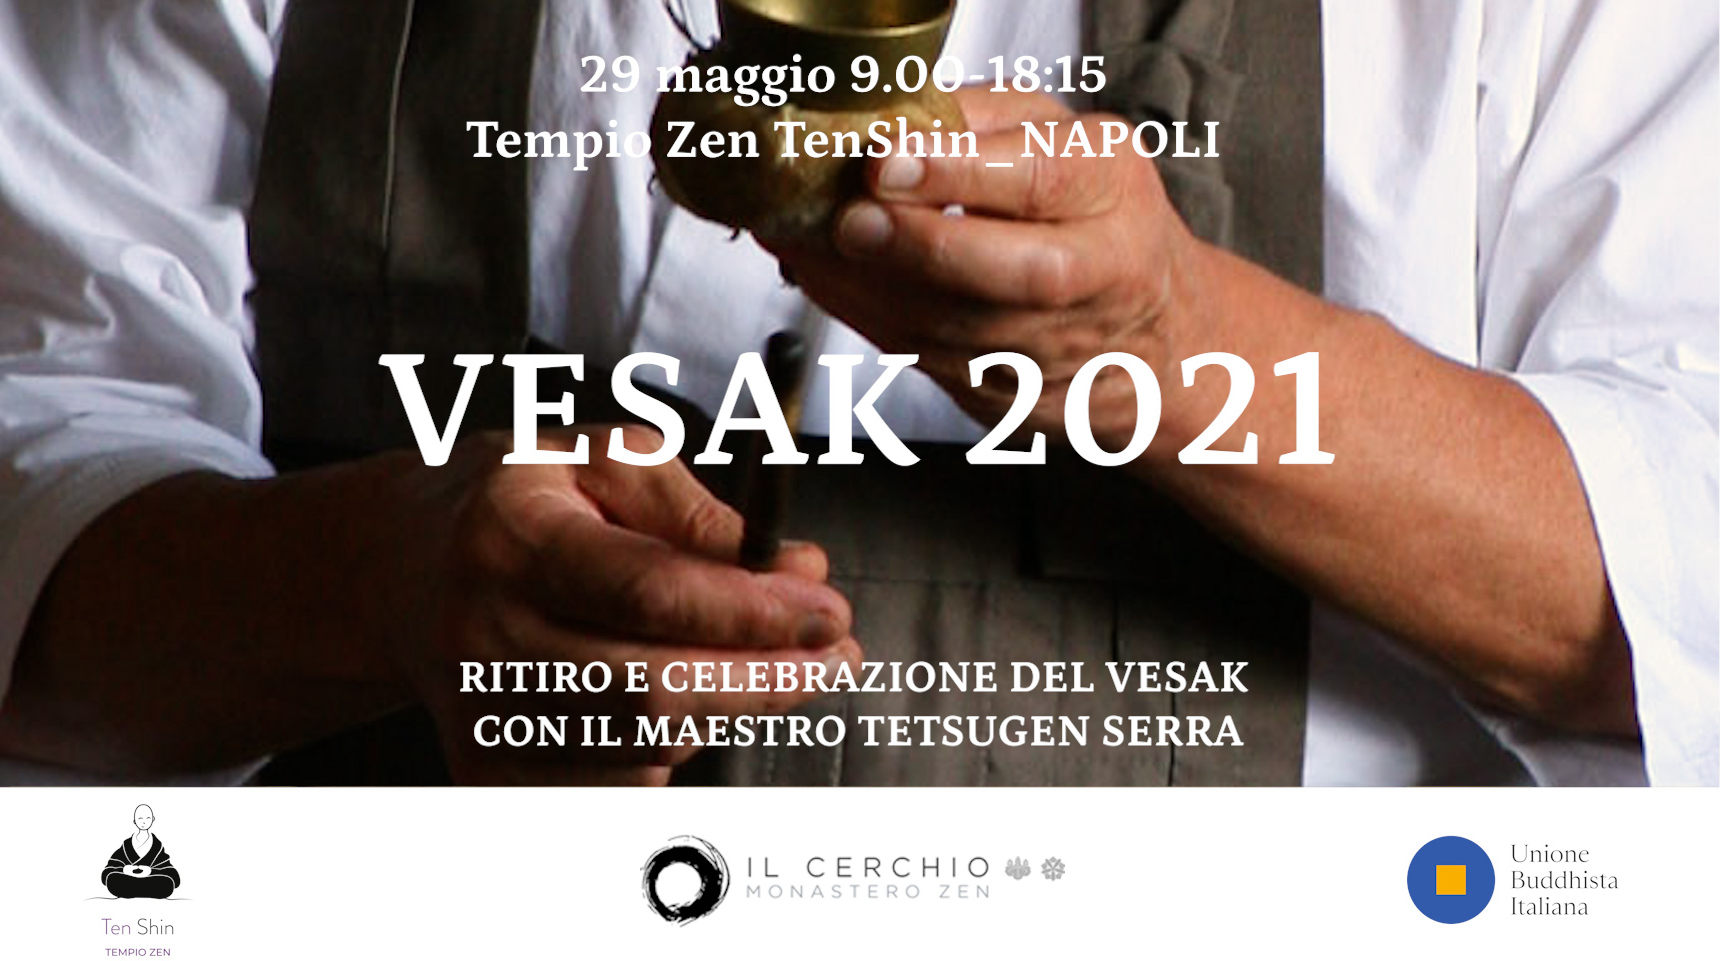 Vesak 2021 NAPOLI